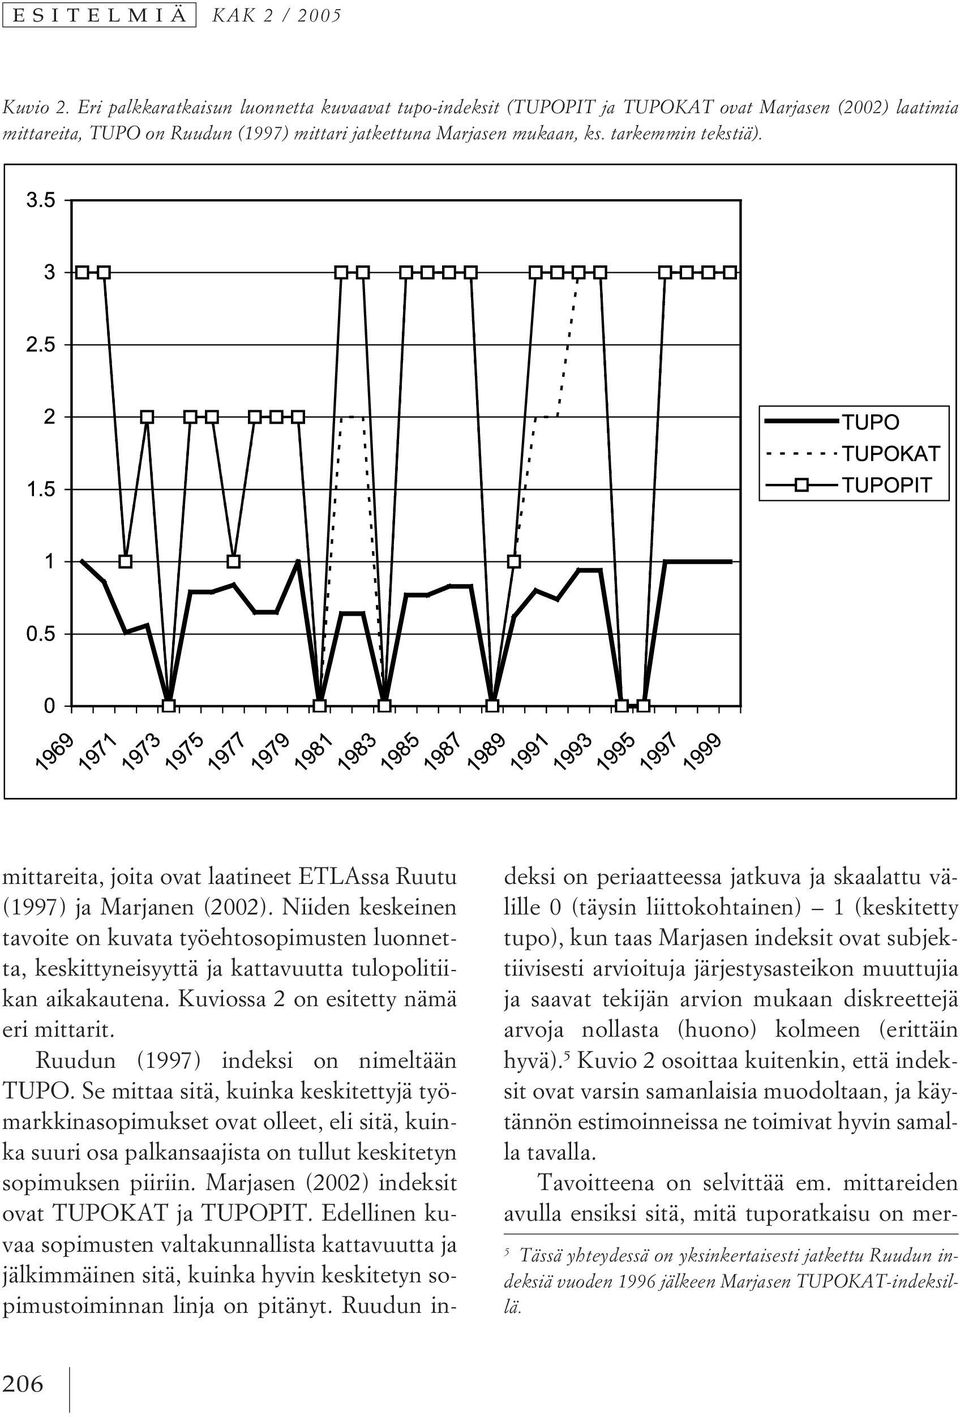 mittareita, joita ovat laatineet ETLAssa Ruutu (1997) ja Marjanen (2002). Niiden keskeinen tavoite on kuvata työehtosopimusten luonnetta, keskittyneisyyttä ja kattavuutta tulopolitiikan aikakautena.